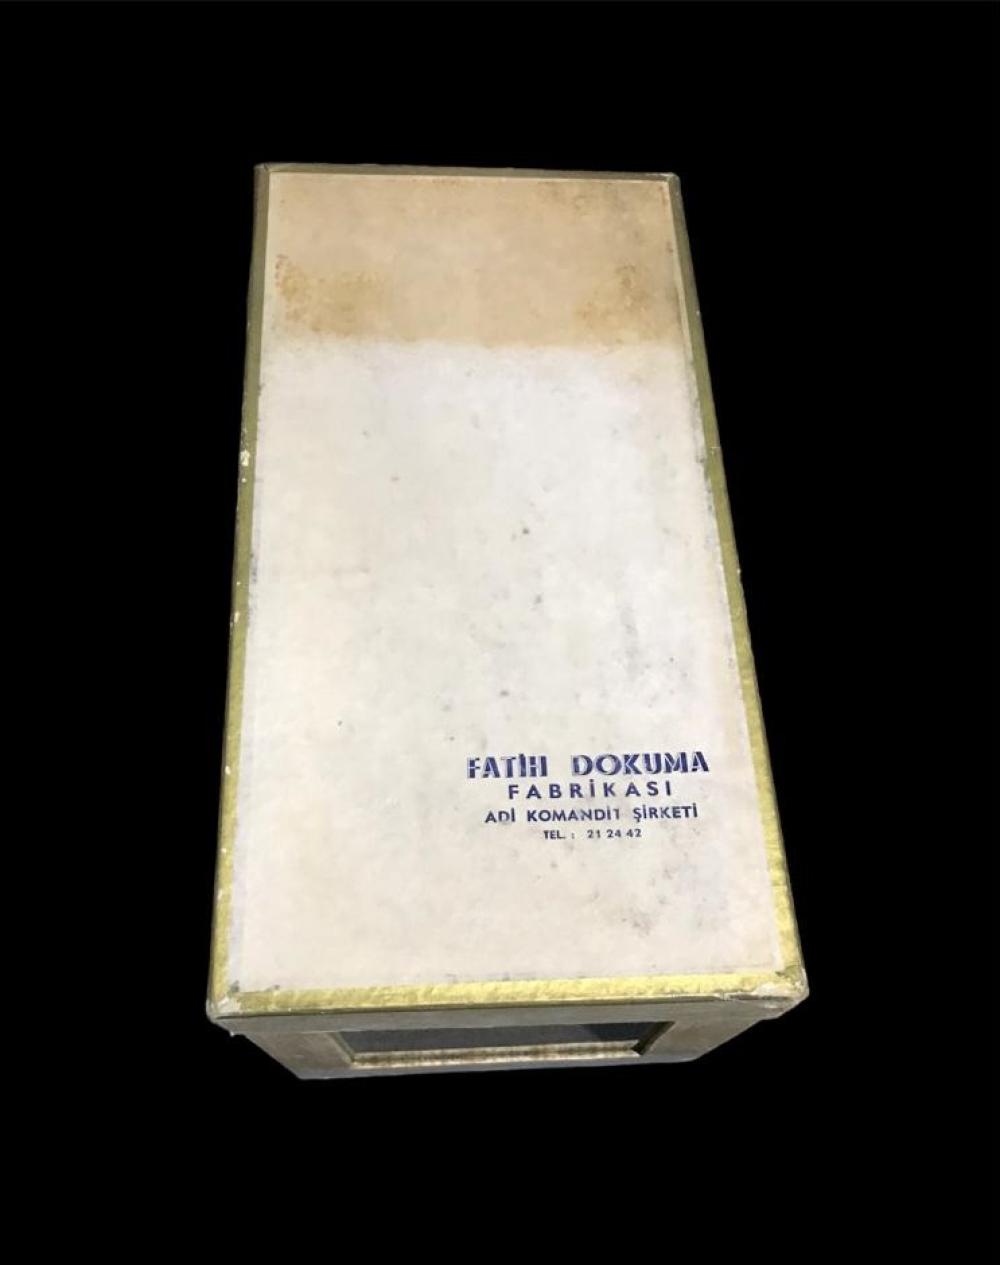 Fatih Dokuma Fabrikası - Karton, büyük boy ürün kutusu